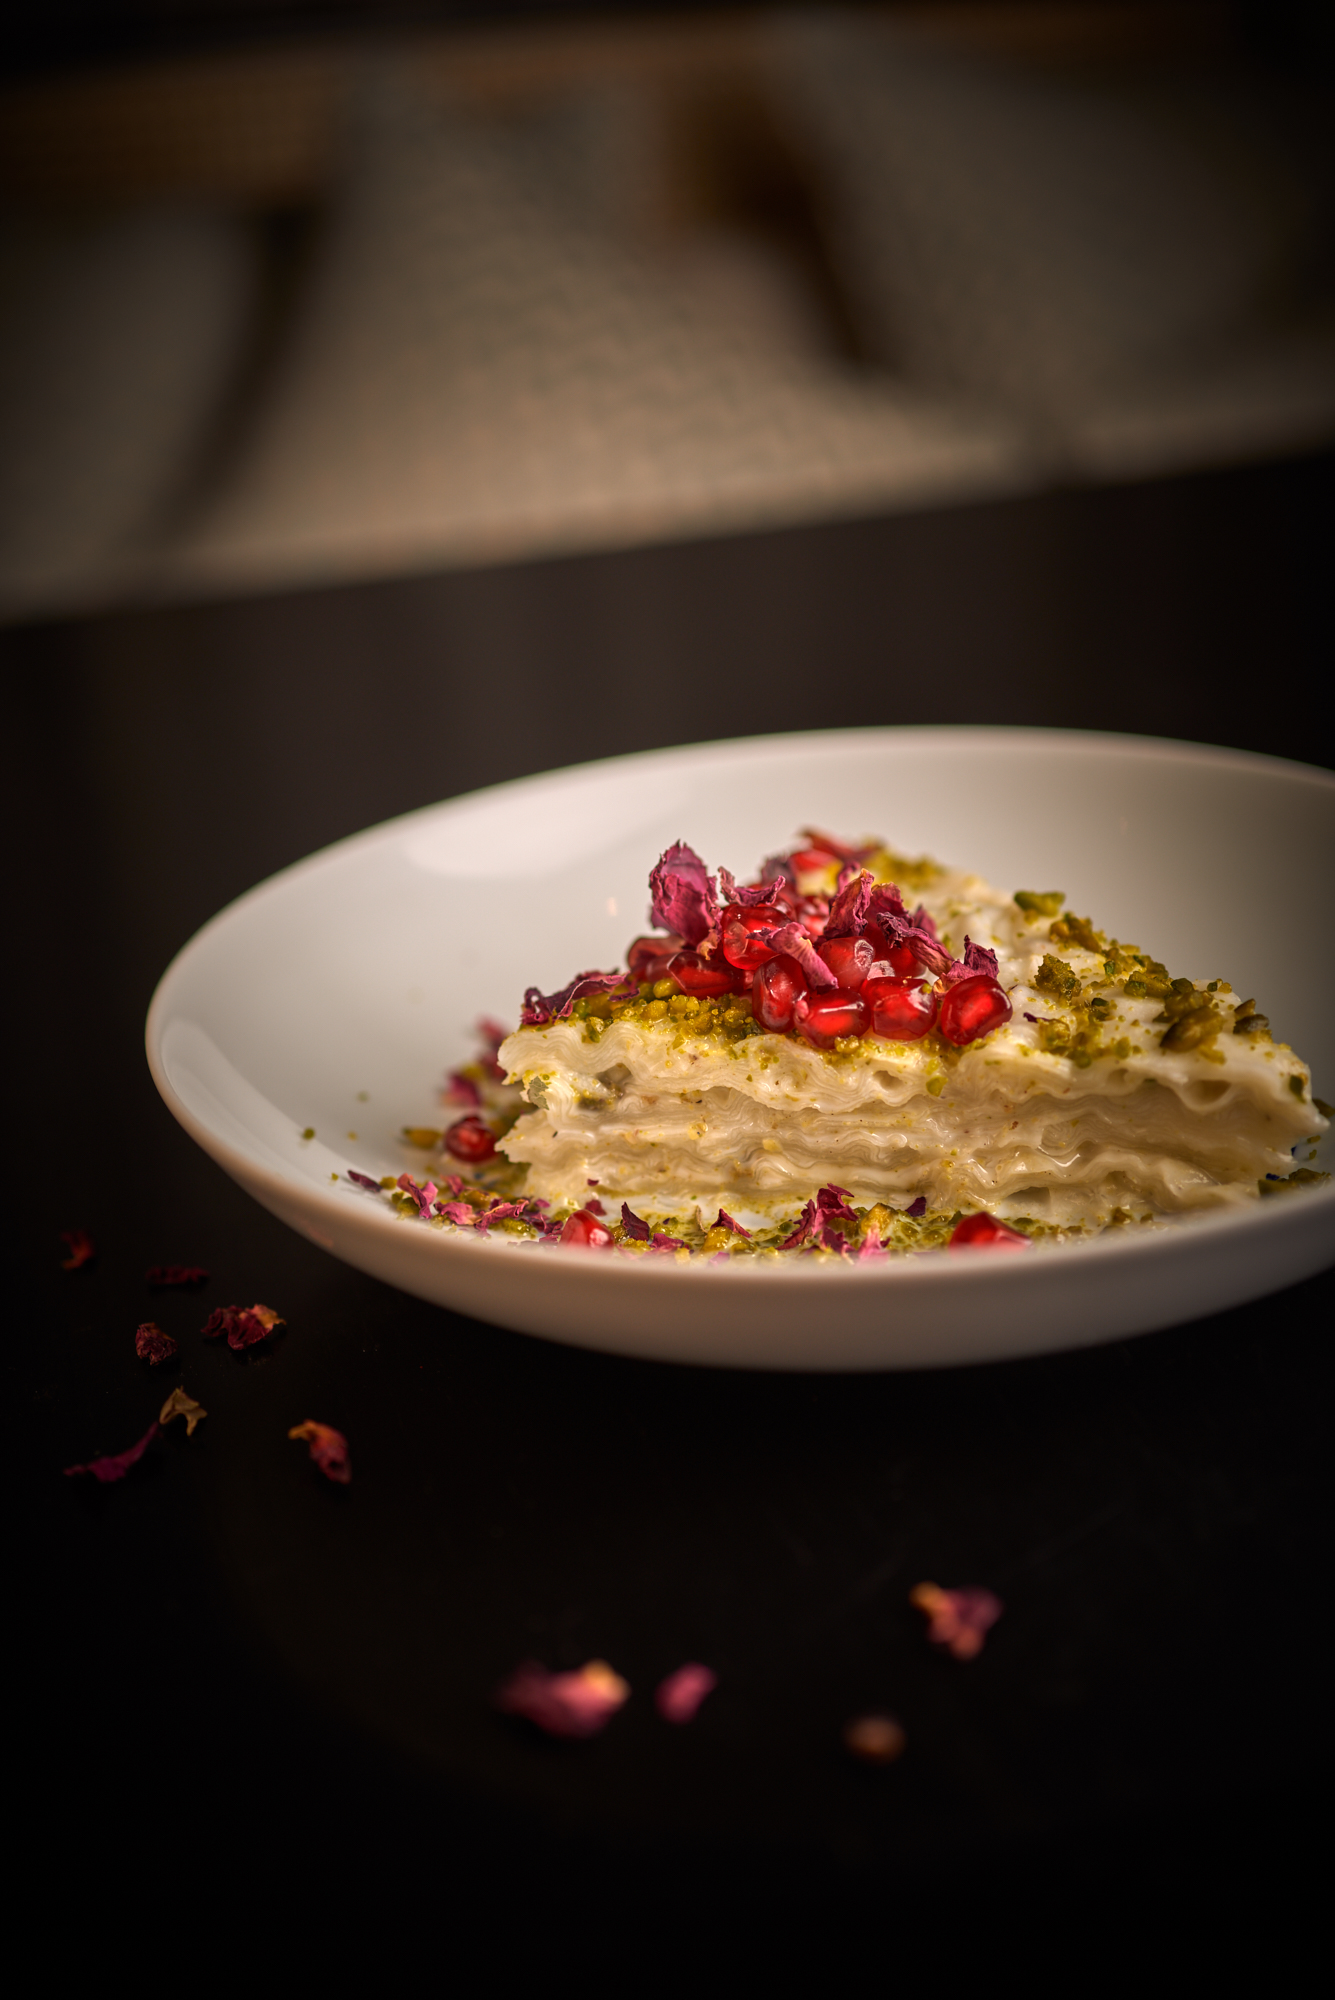 مطعم رؤيا دبي يكشف عن قائمة طعامه احتفاءً بحلول شهر رمضان 2019